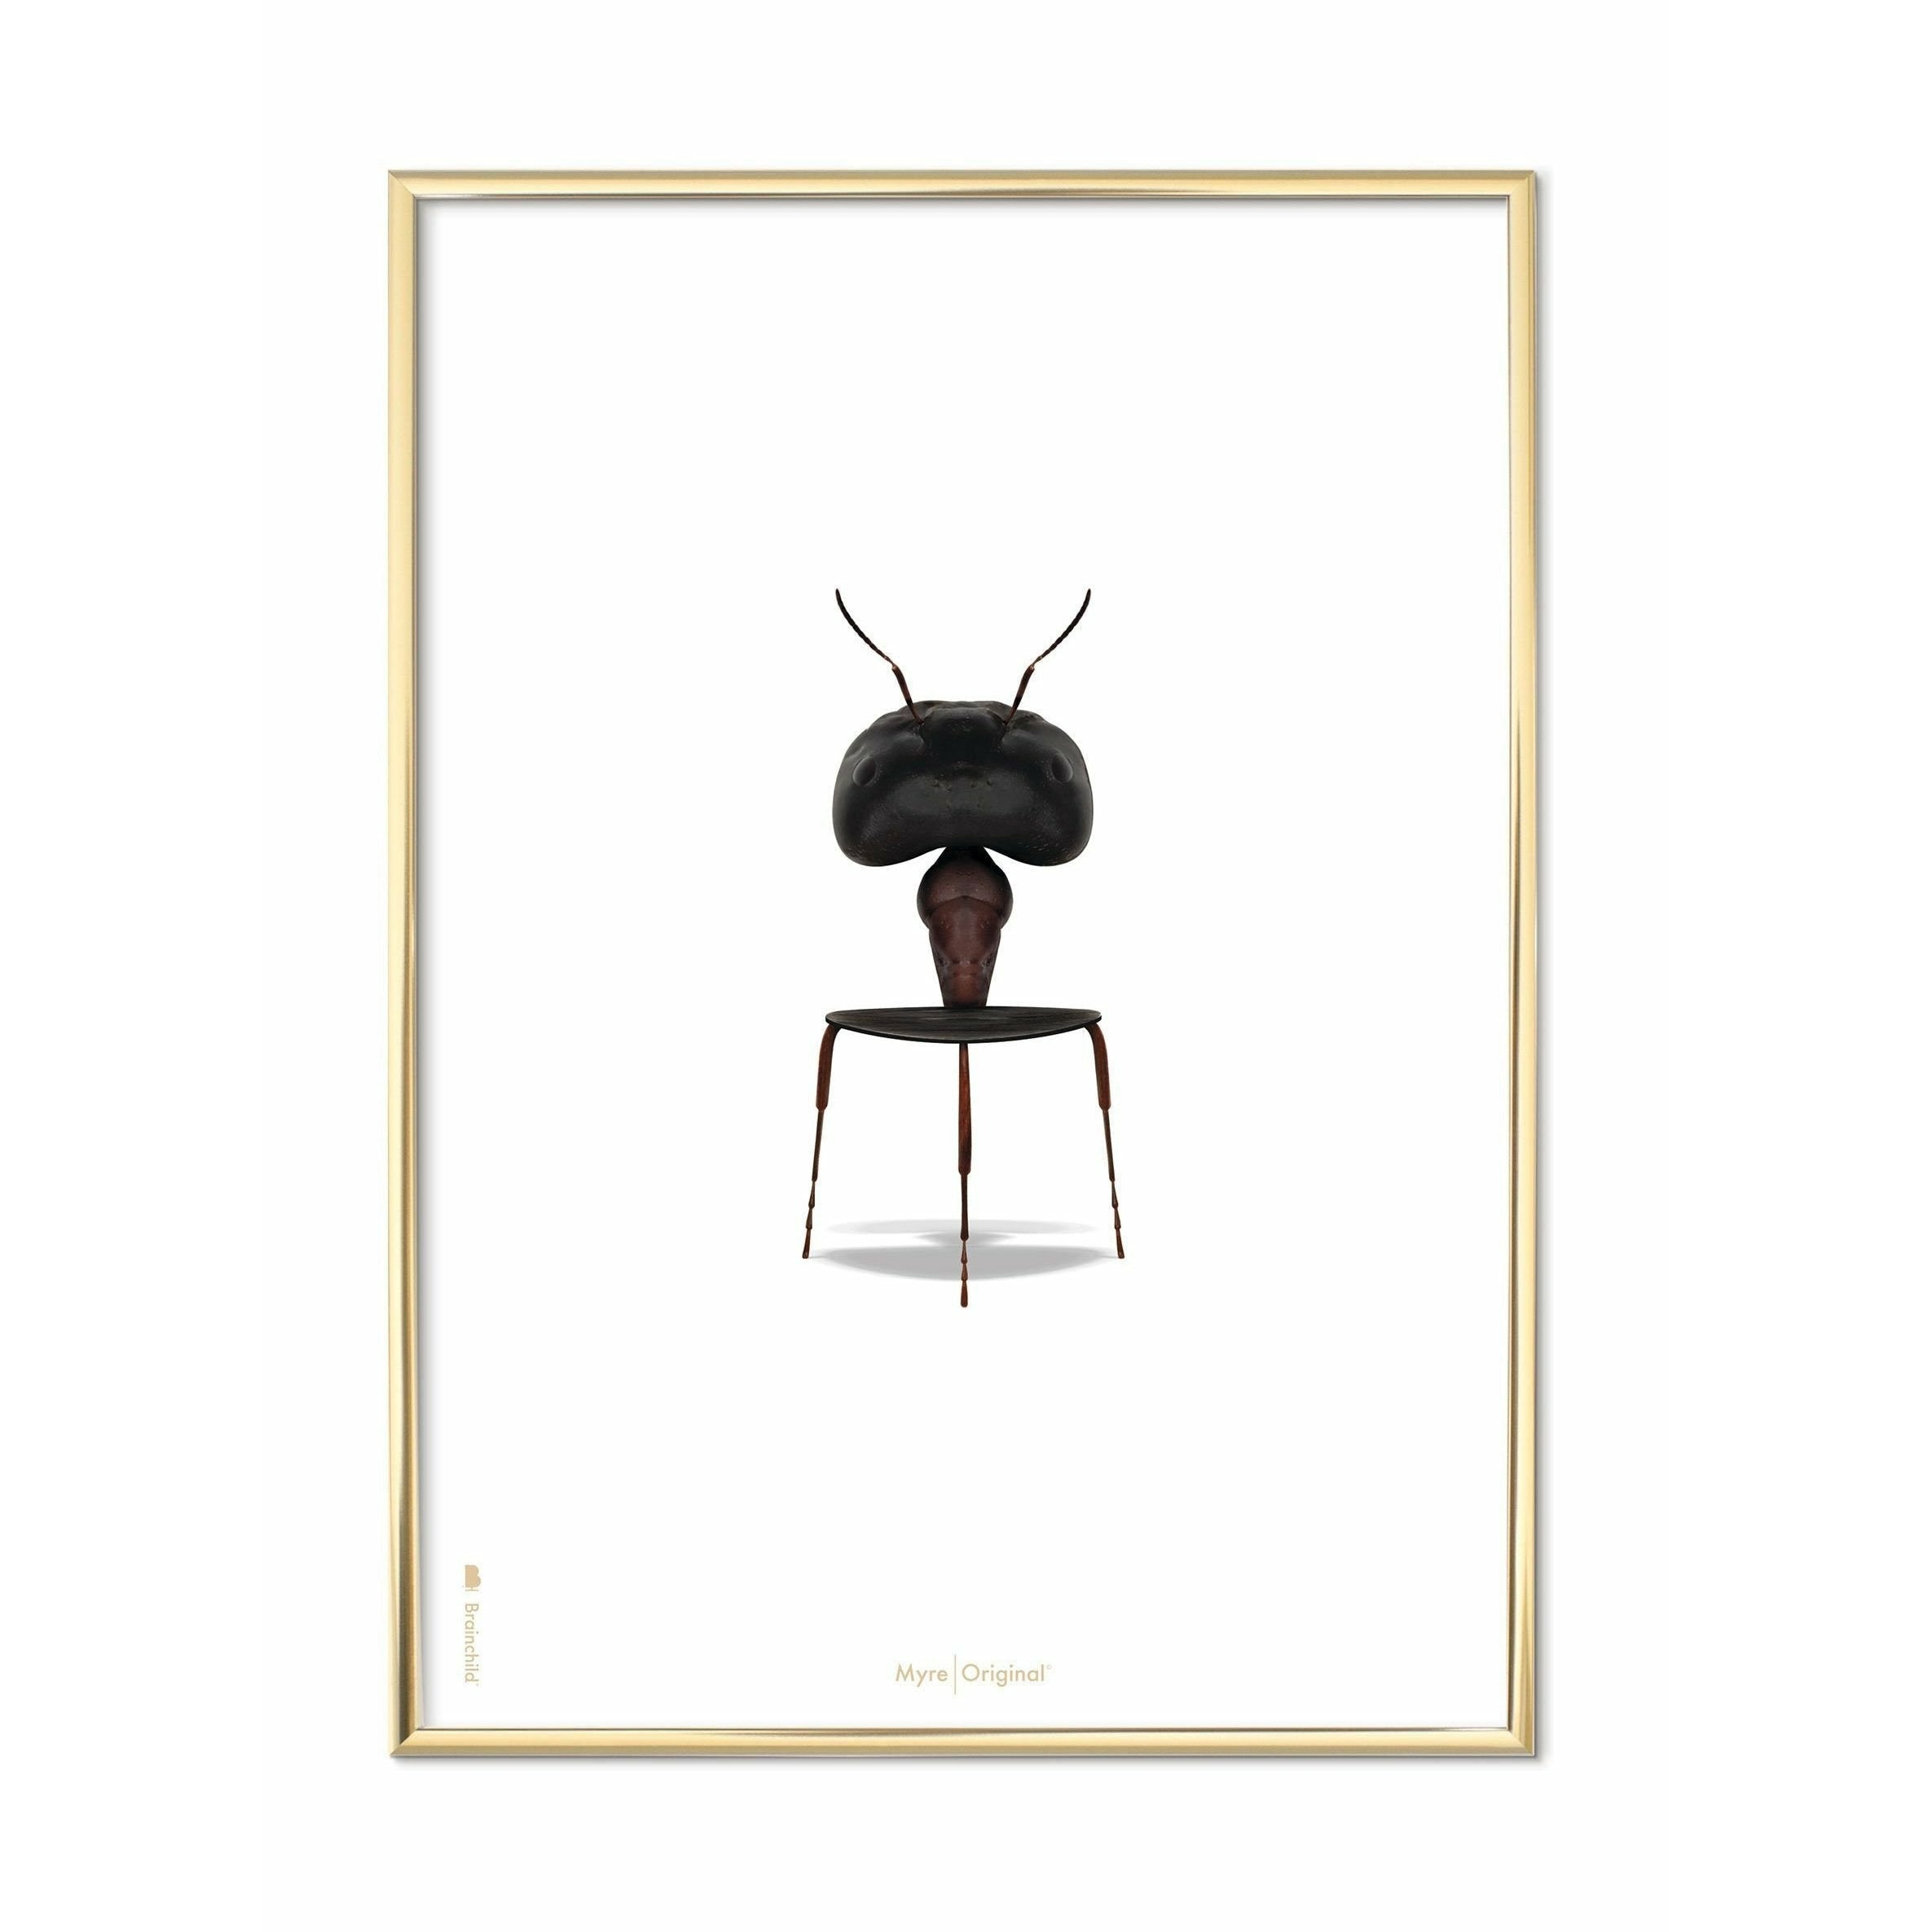 Póster clásico de hormigas de creación, marco de color de latón 70x100 cm, fondo blanco